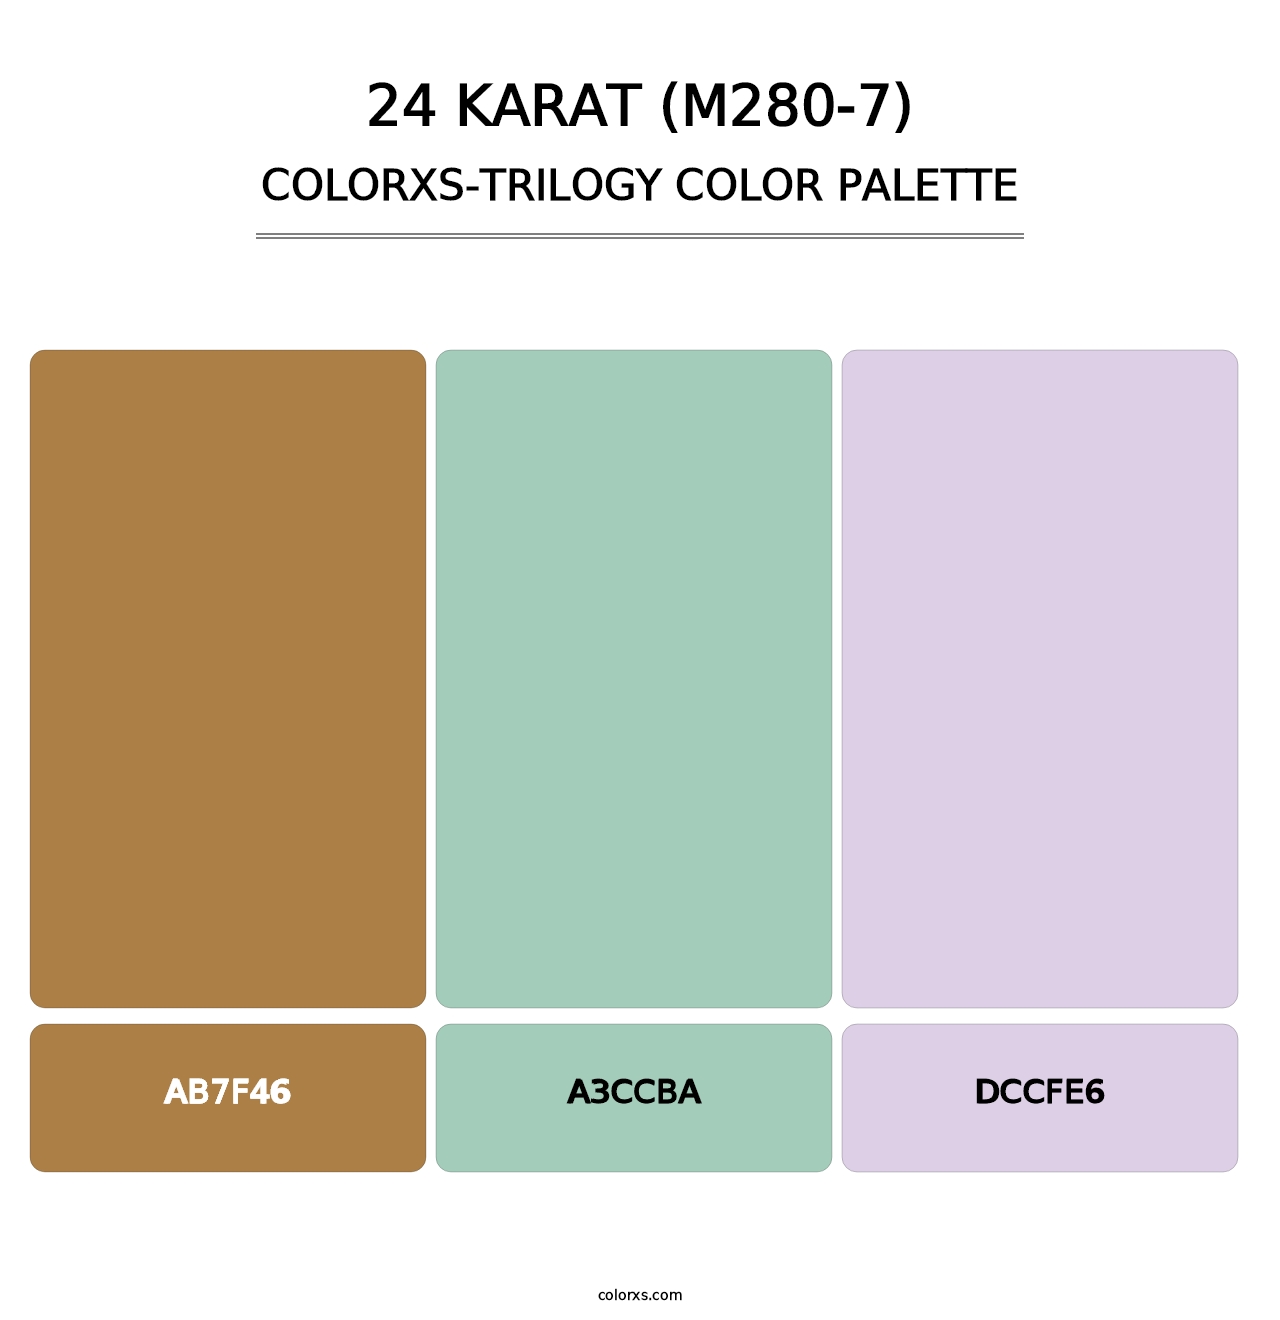 24 Karat (M280-7) - Colorxs Trilogy Palette